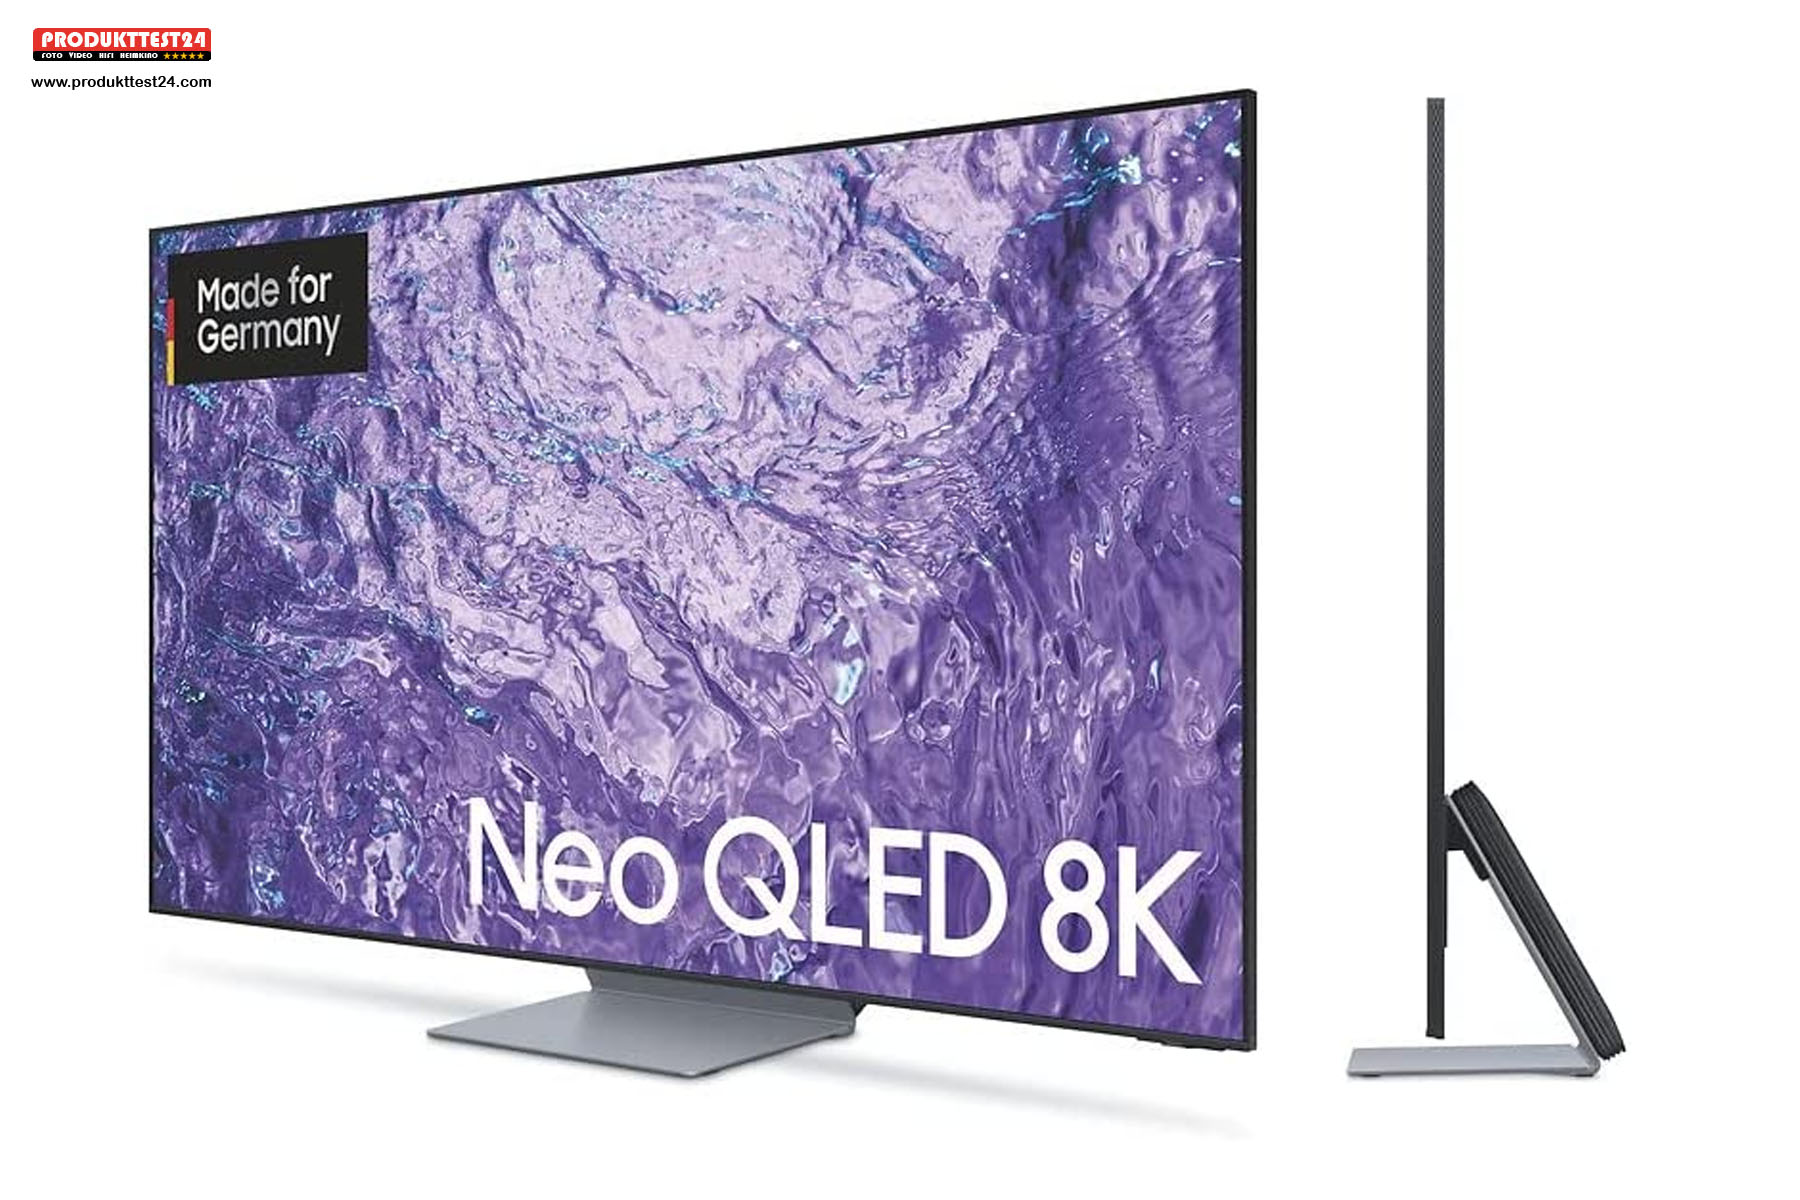 Der günstige 8K-Fernseher aus der neuen QN700C Serie